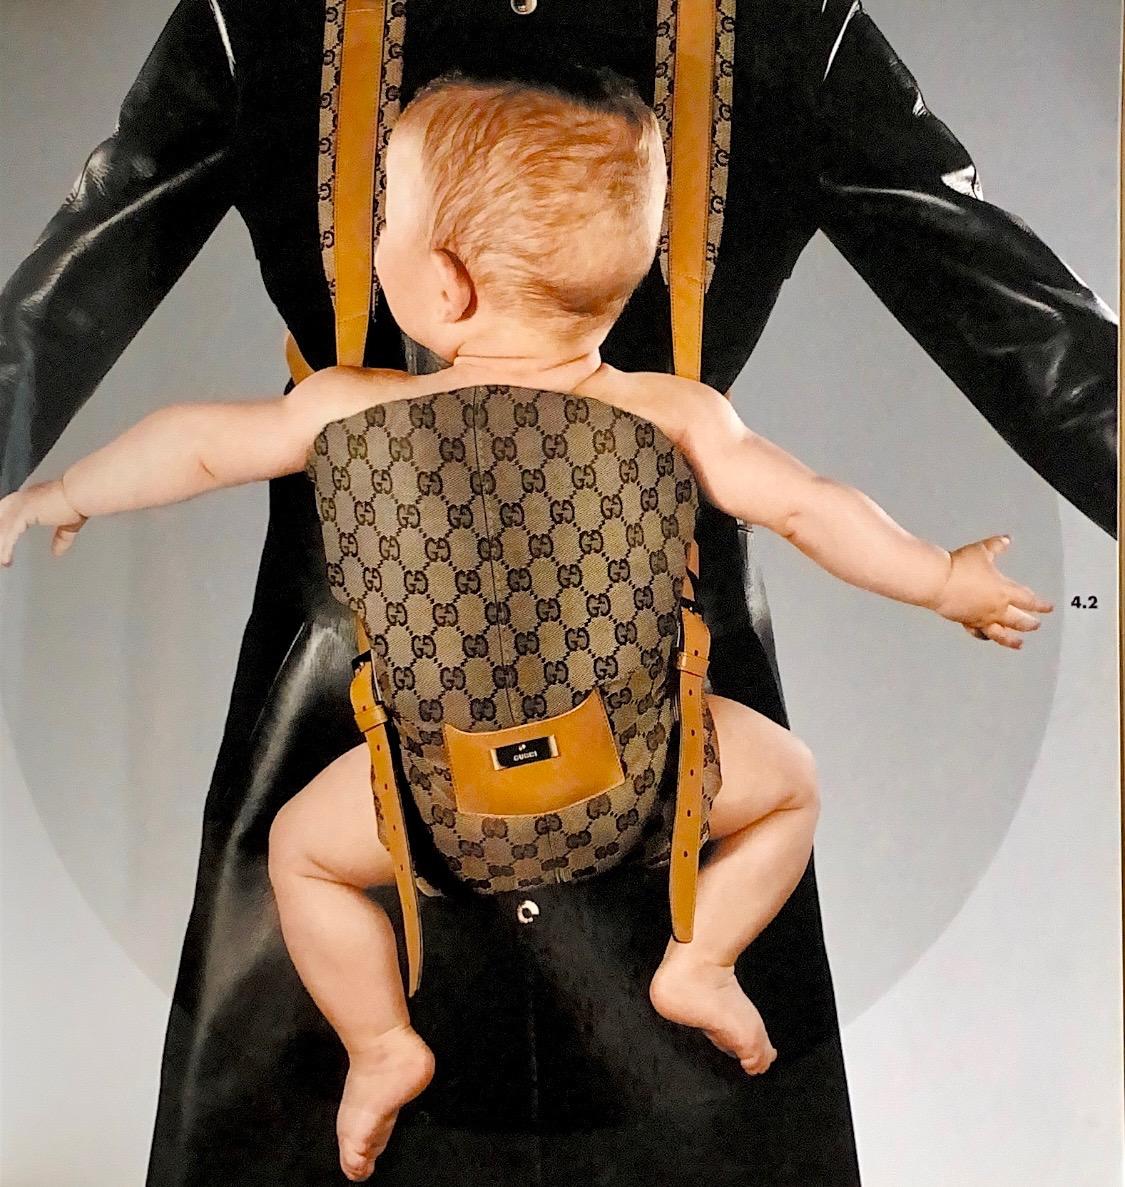 Wir präsentieren eine seltene, von Tom Ford für Gucci entworfene Babytrage, die im Rahmen der Herbst/Winter-Kollektion 2000 erschien. Versilberte Schnallenverschlüsse vorne und Clips hinten machen dieses Stück leicht verstellbar. Der